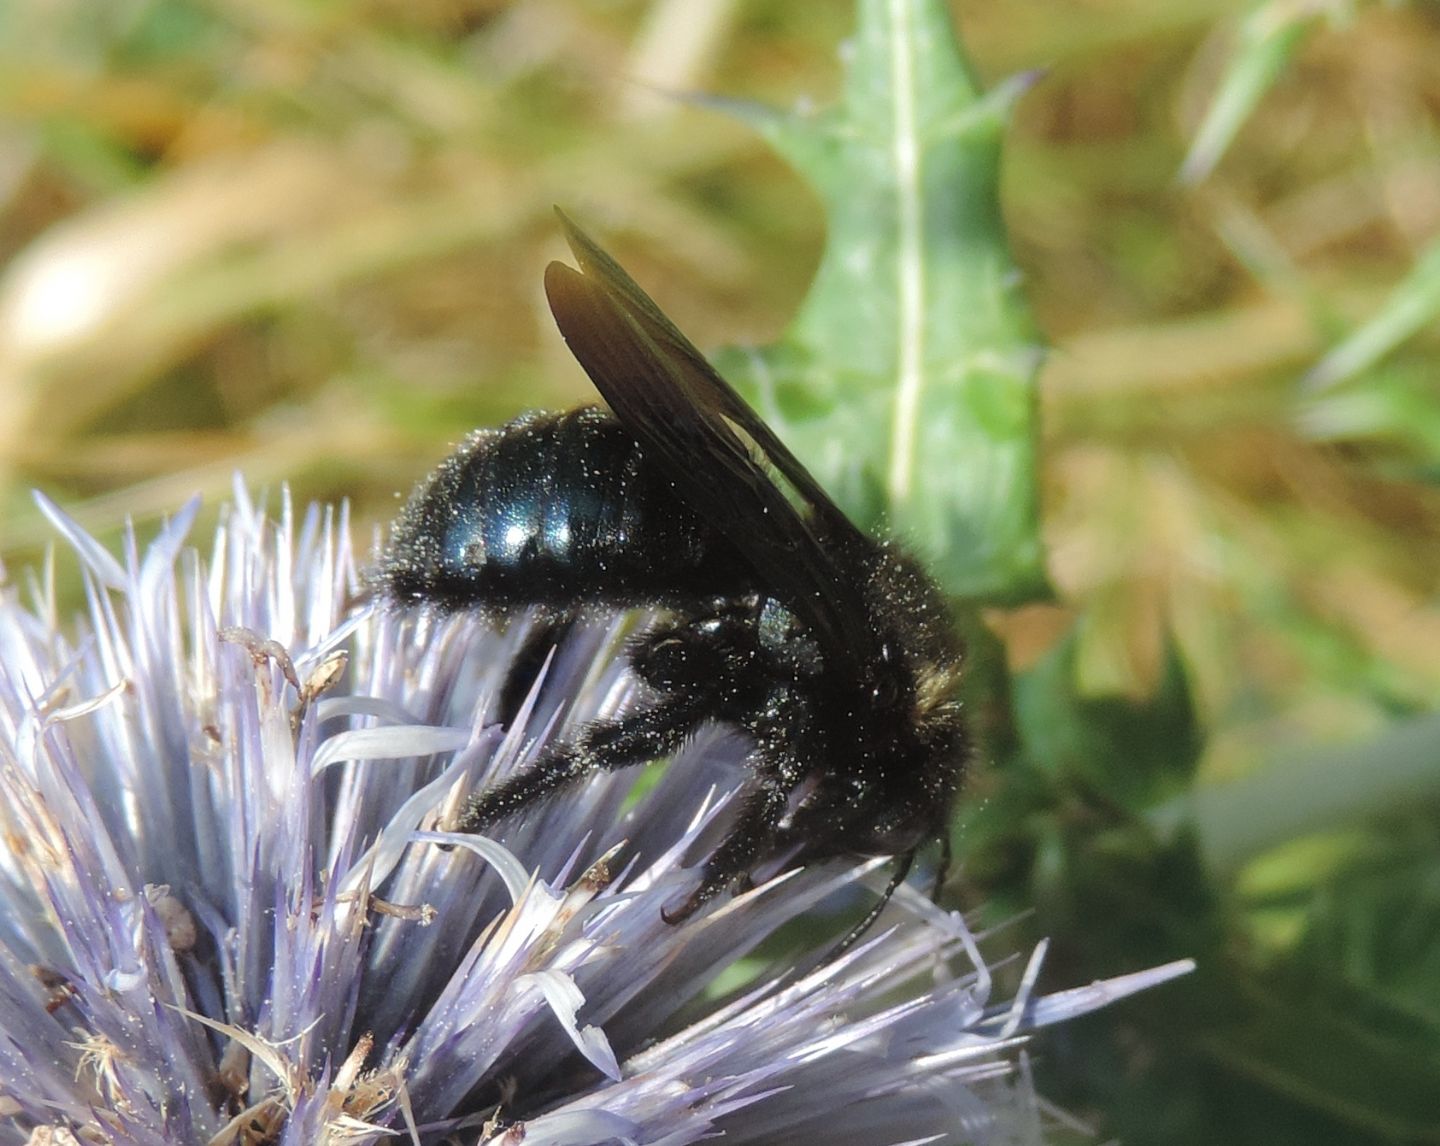 Xylocopa iris, maschio (Apidae) e Colpa quinquecincta, femmina (Scoliidae).